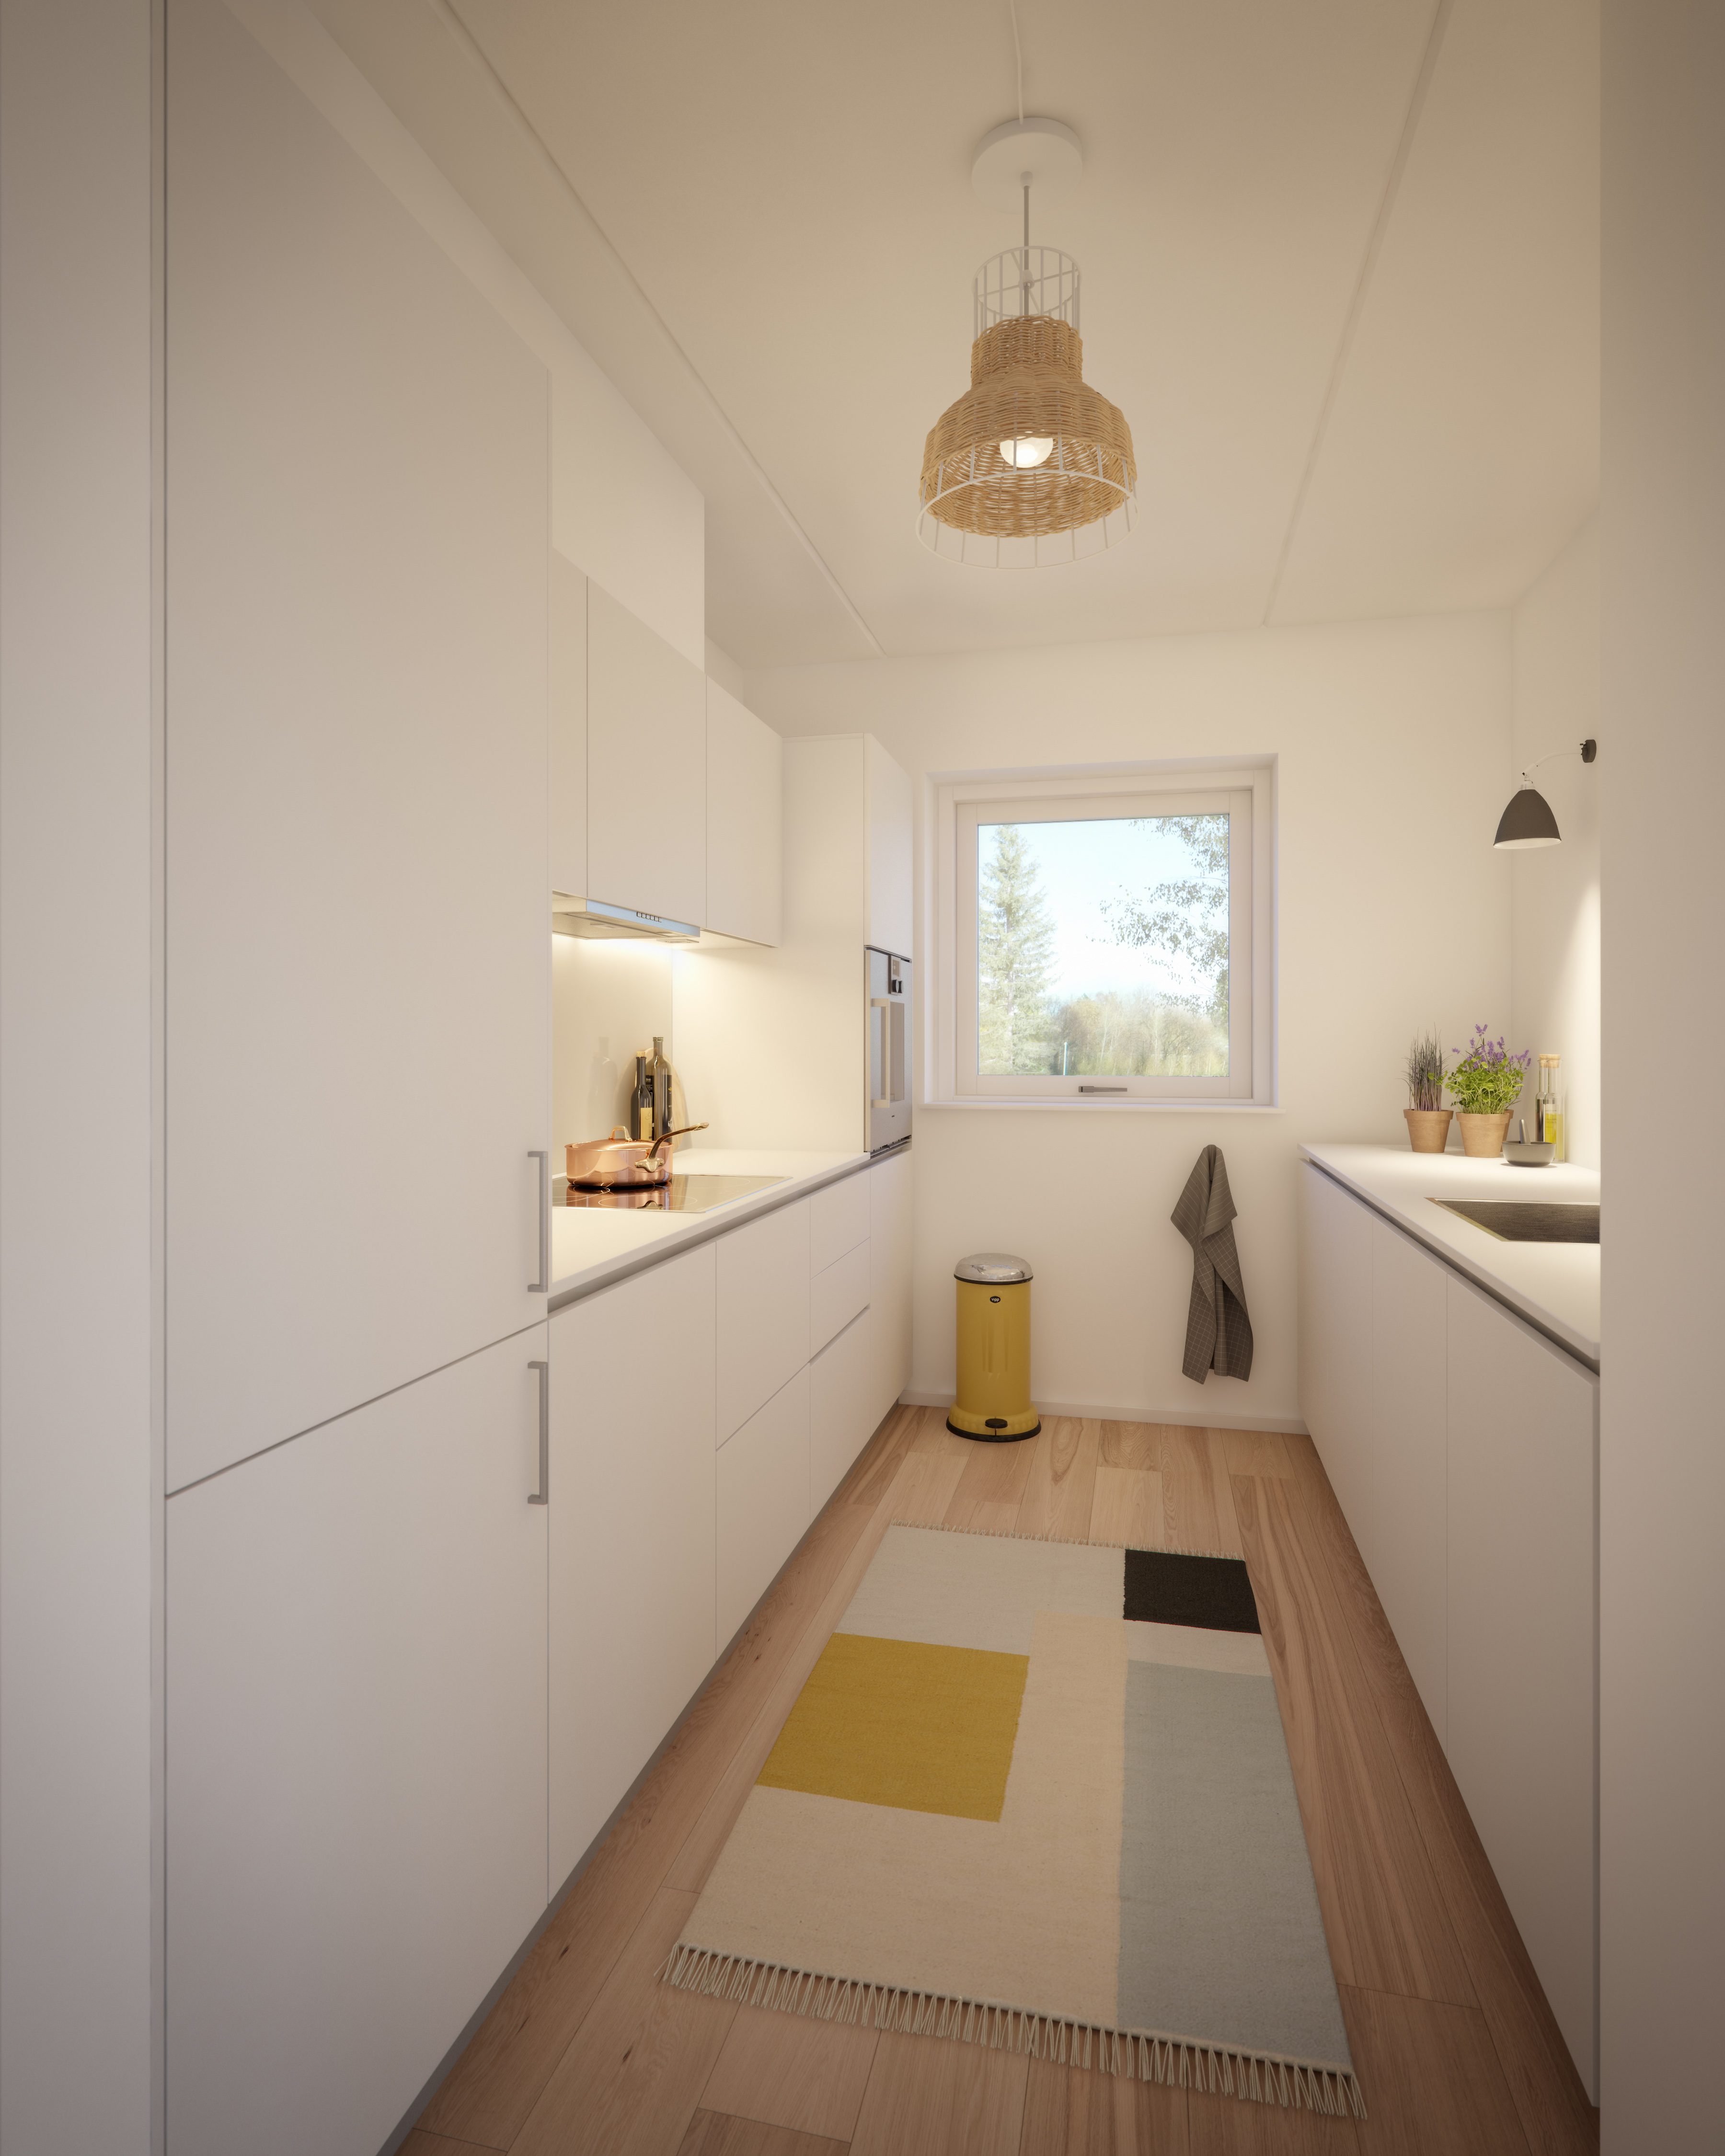 bolig interiør design projektsalg 3d visualisering arkitektur lejlighed køkken